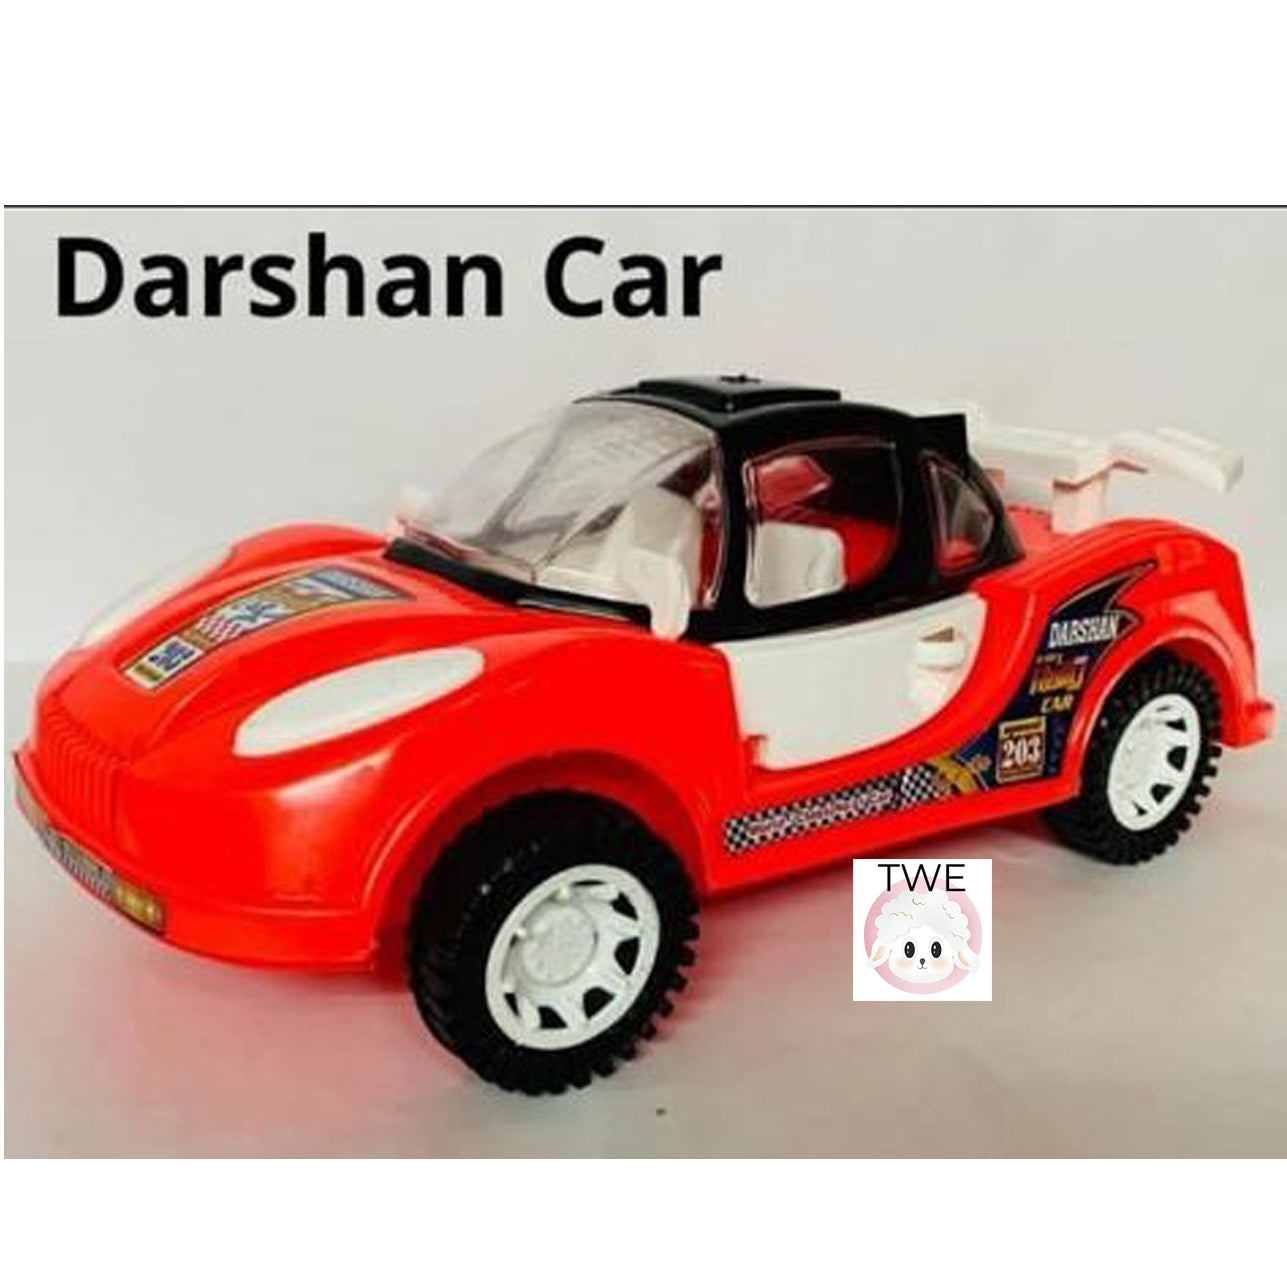 Darshan Car (Friction Based)